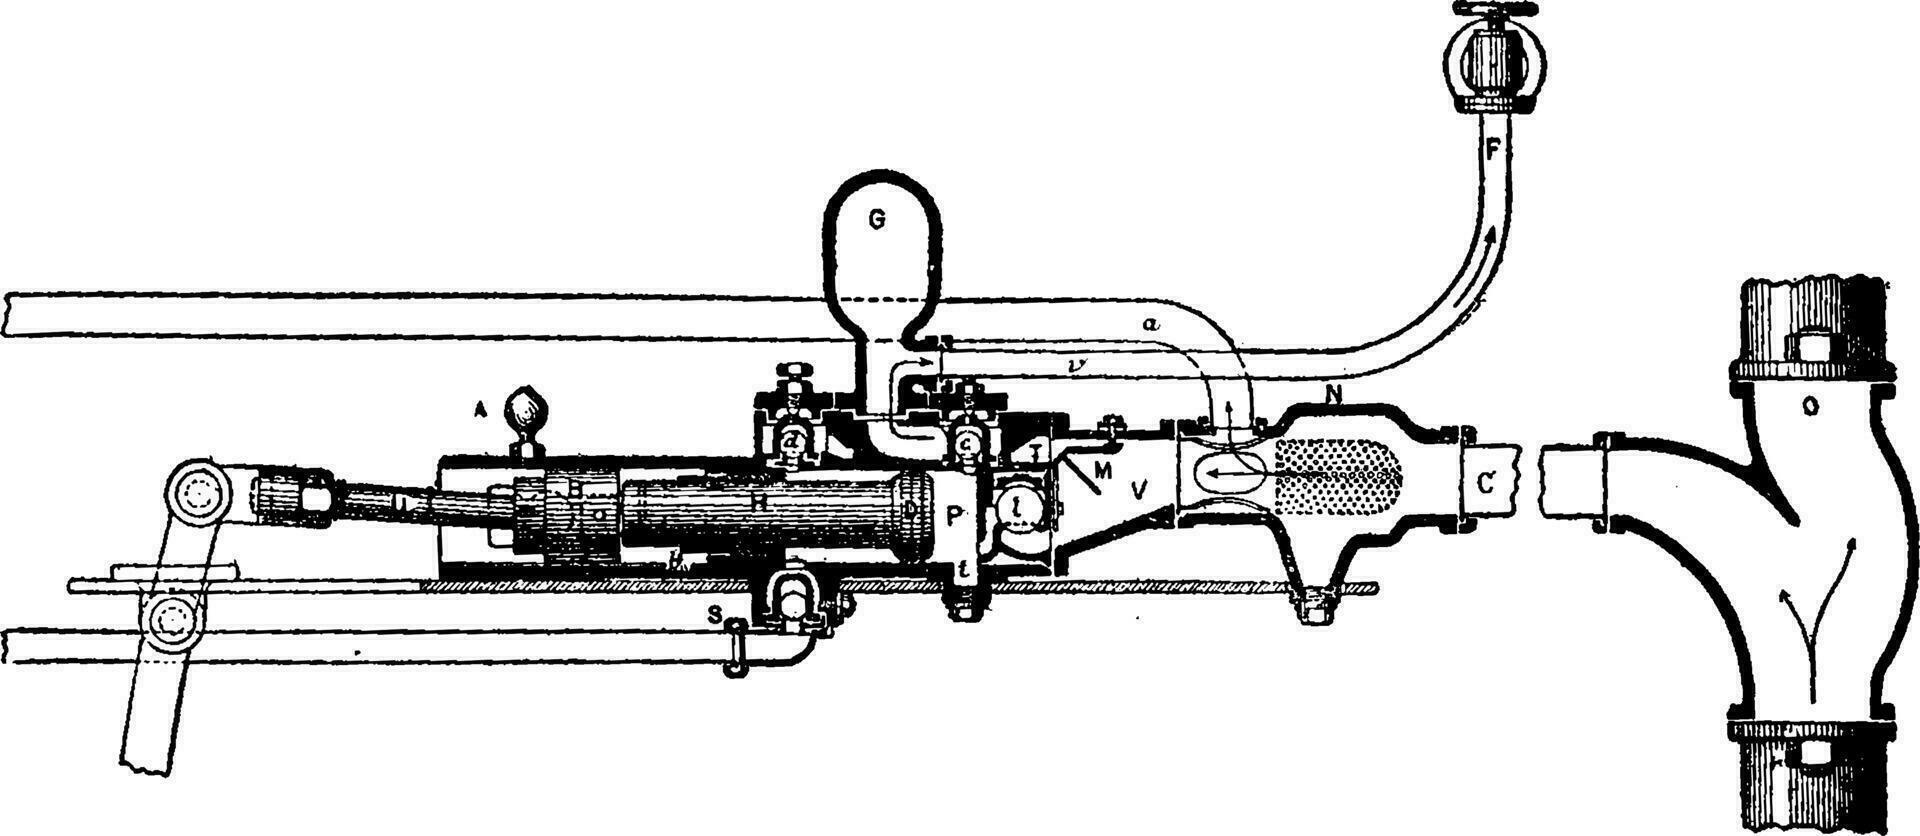 section de le injecteur pompe Chiazzari, ancien gravure. vecteur